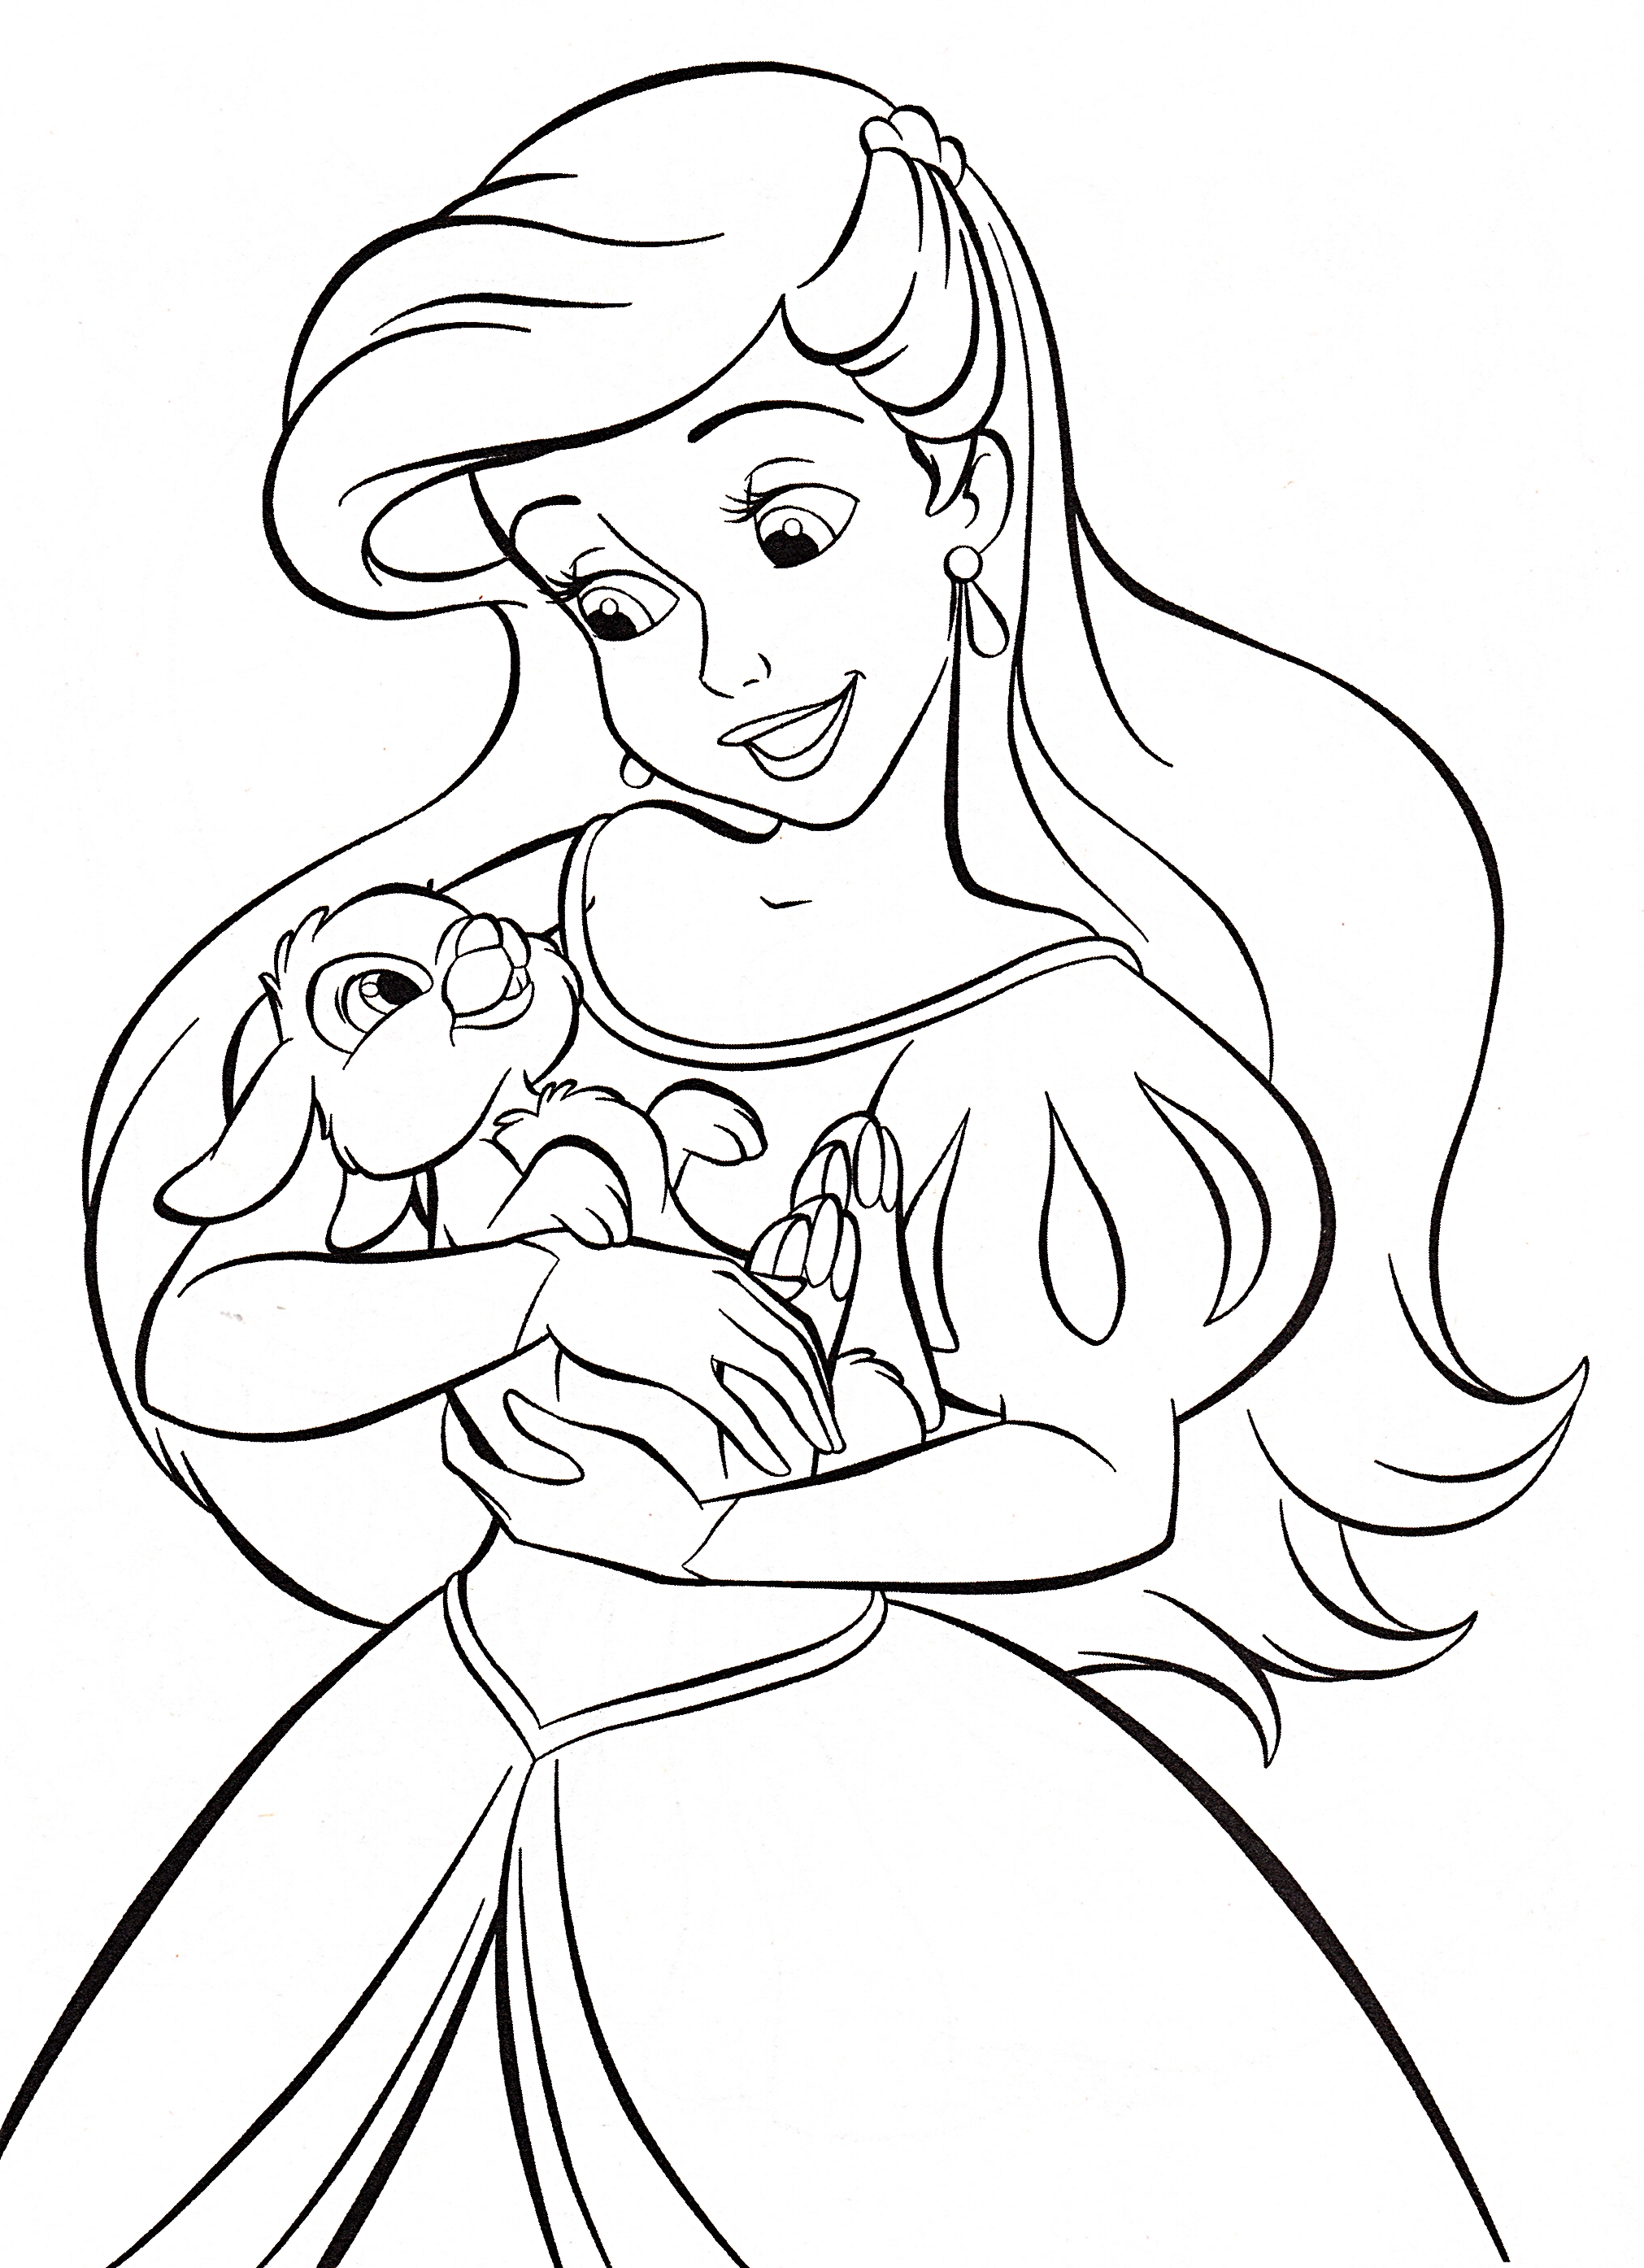 Walt disney Coloring Pages - Princess Ariel - personajes de walt ...